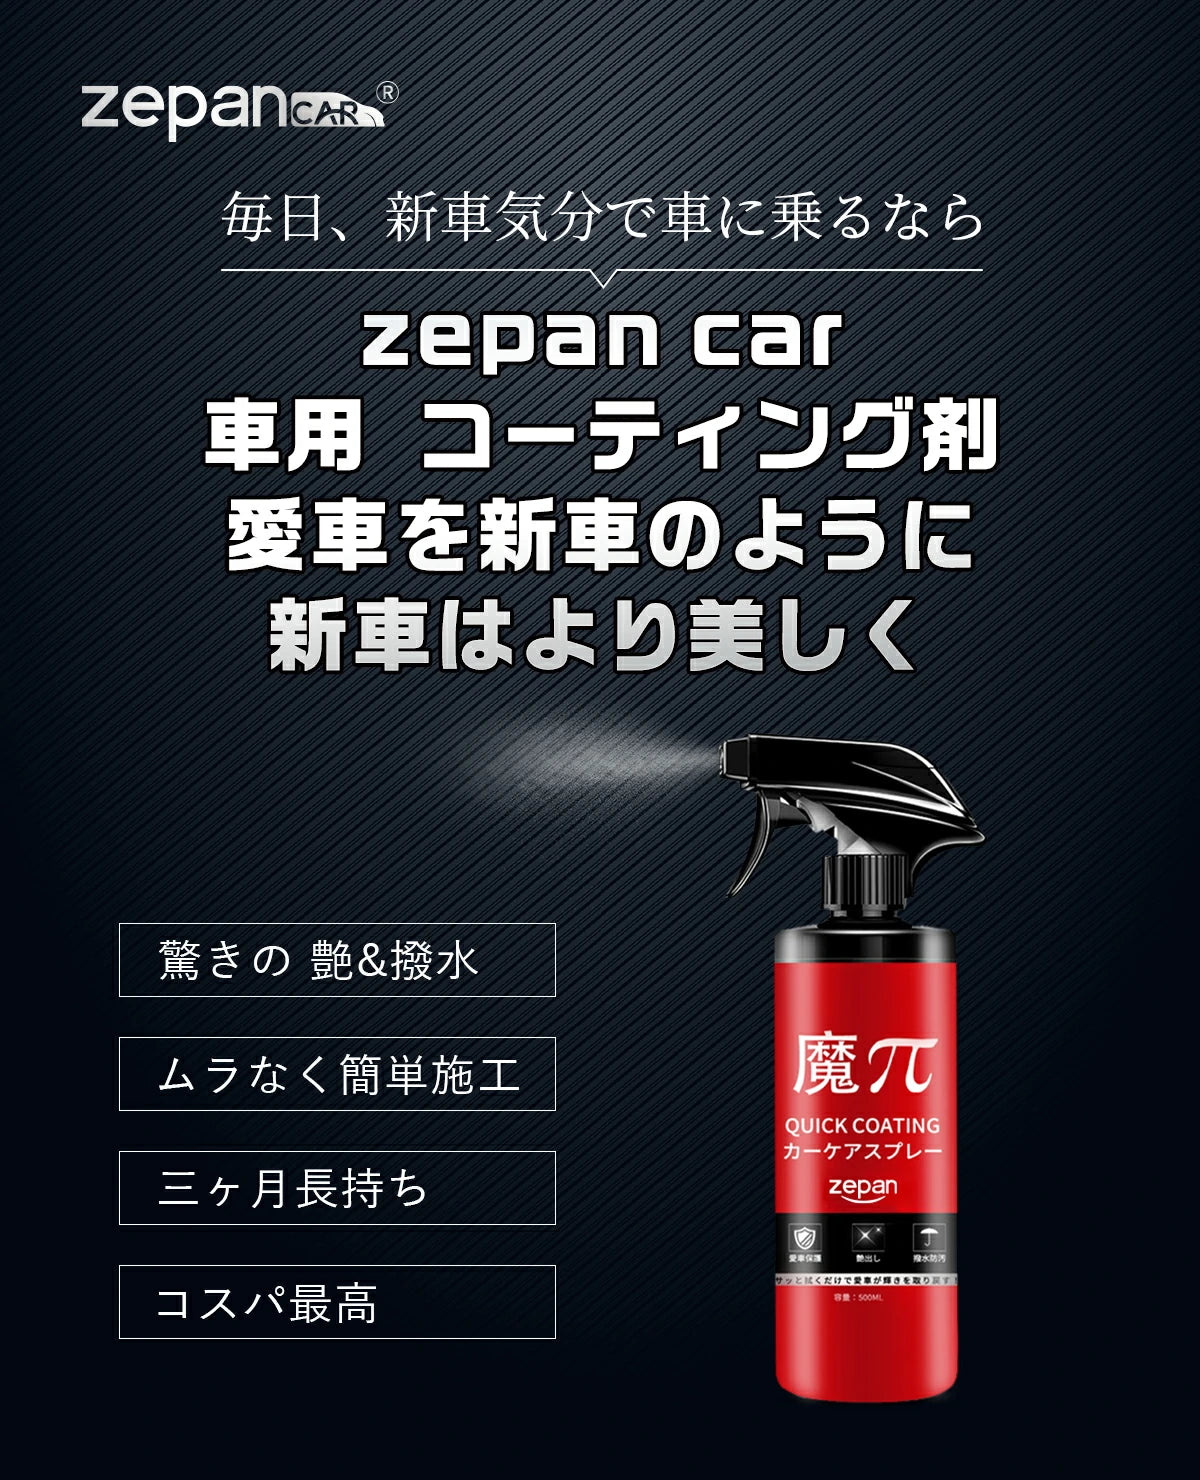 zepan car 車用 コーティング剤，愛車を新車のように，新車はより美しく。驚きの 艷&撥水，ムラなく簡単施工，三ヶ月長持ち，コスパ最高